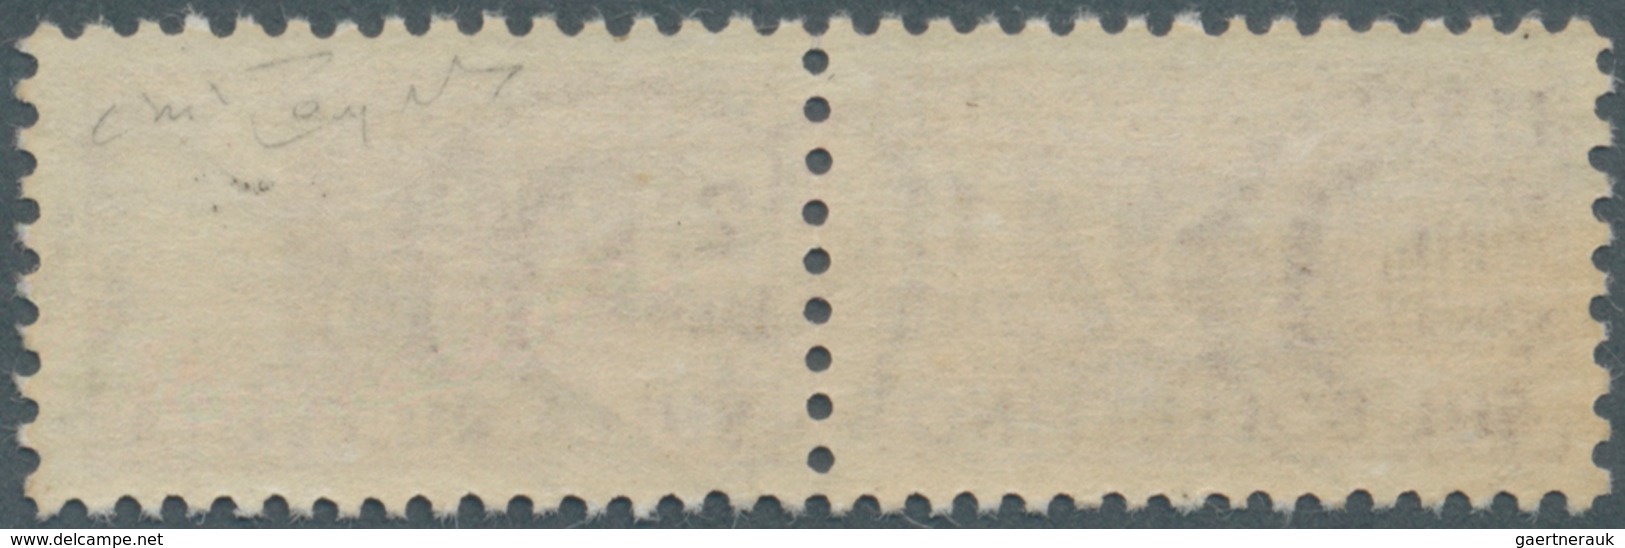 14799 Italien - Paketmarken: 1948, 300l. Purple Unmounted Mint With Natural Gum Creasing, Signed Raybaudi. - Paketmarken